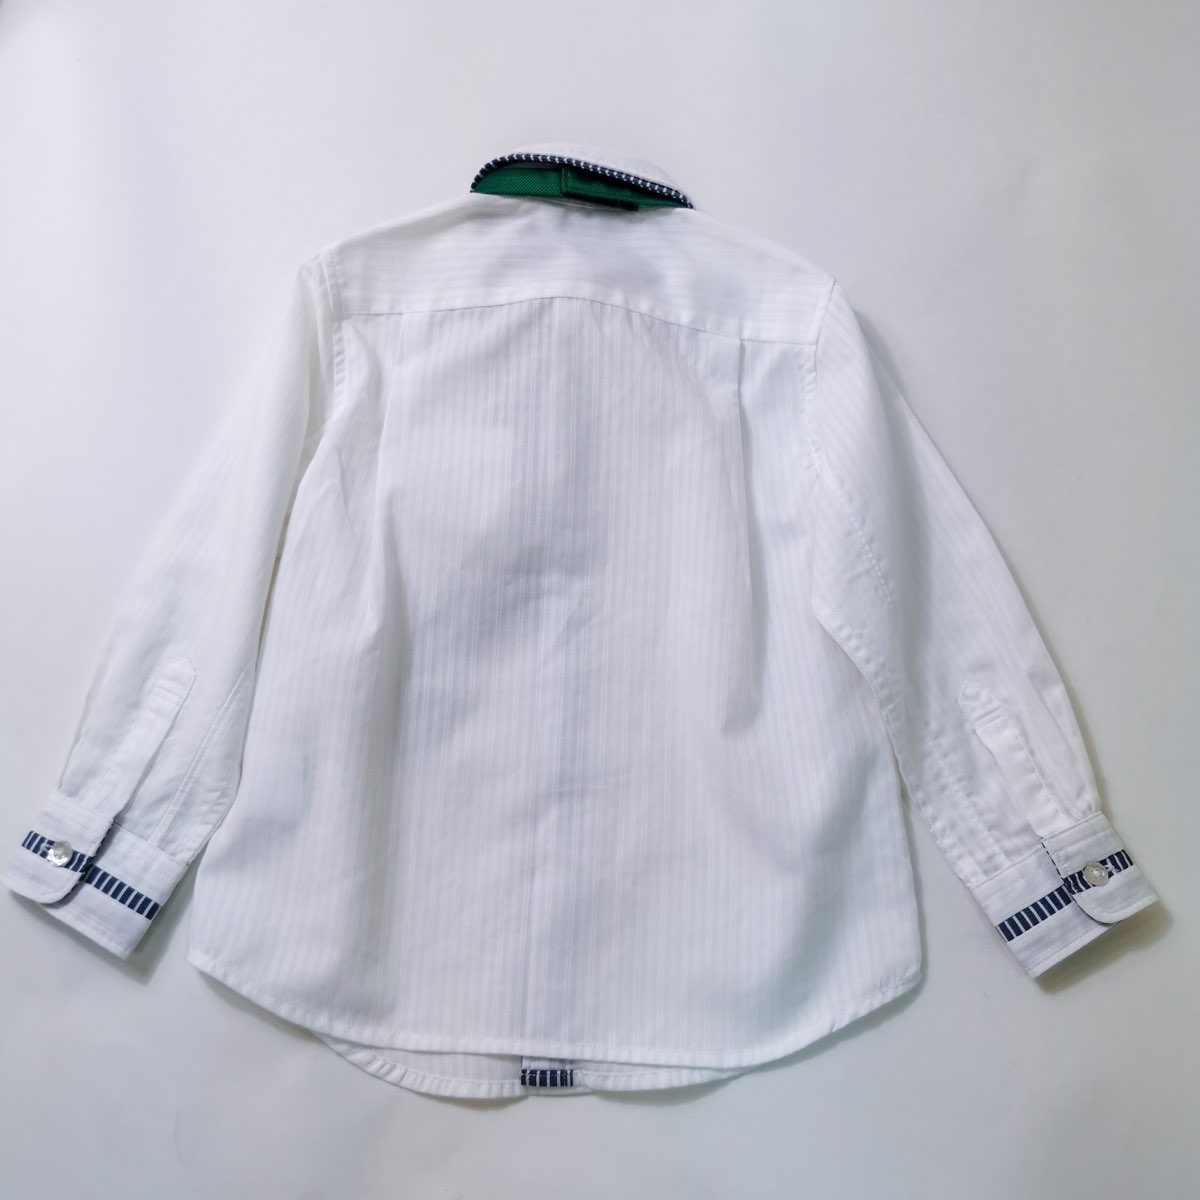 เสื้อเชิ้ดแขนยาวเด็ก สีขาว COMME CA ISM 98-10HZ07 Size 100cm